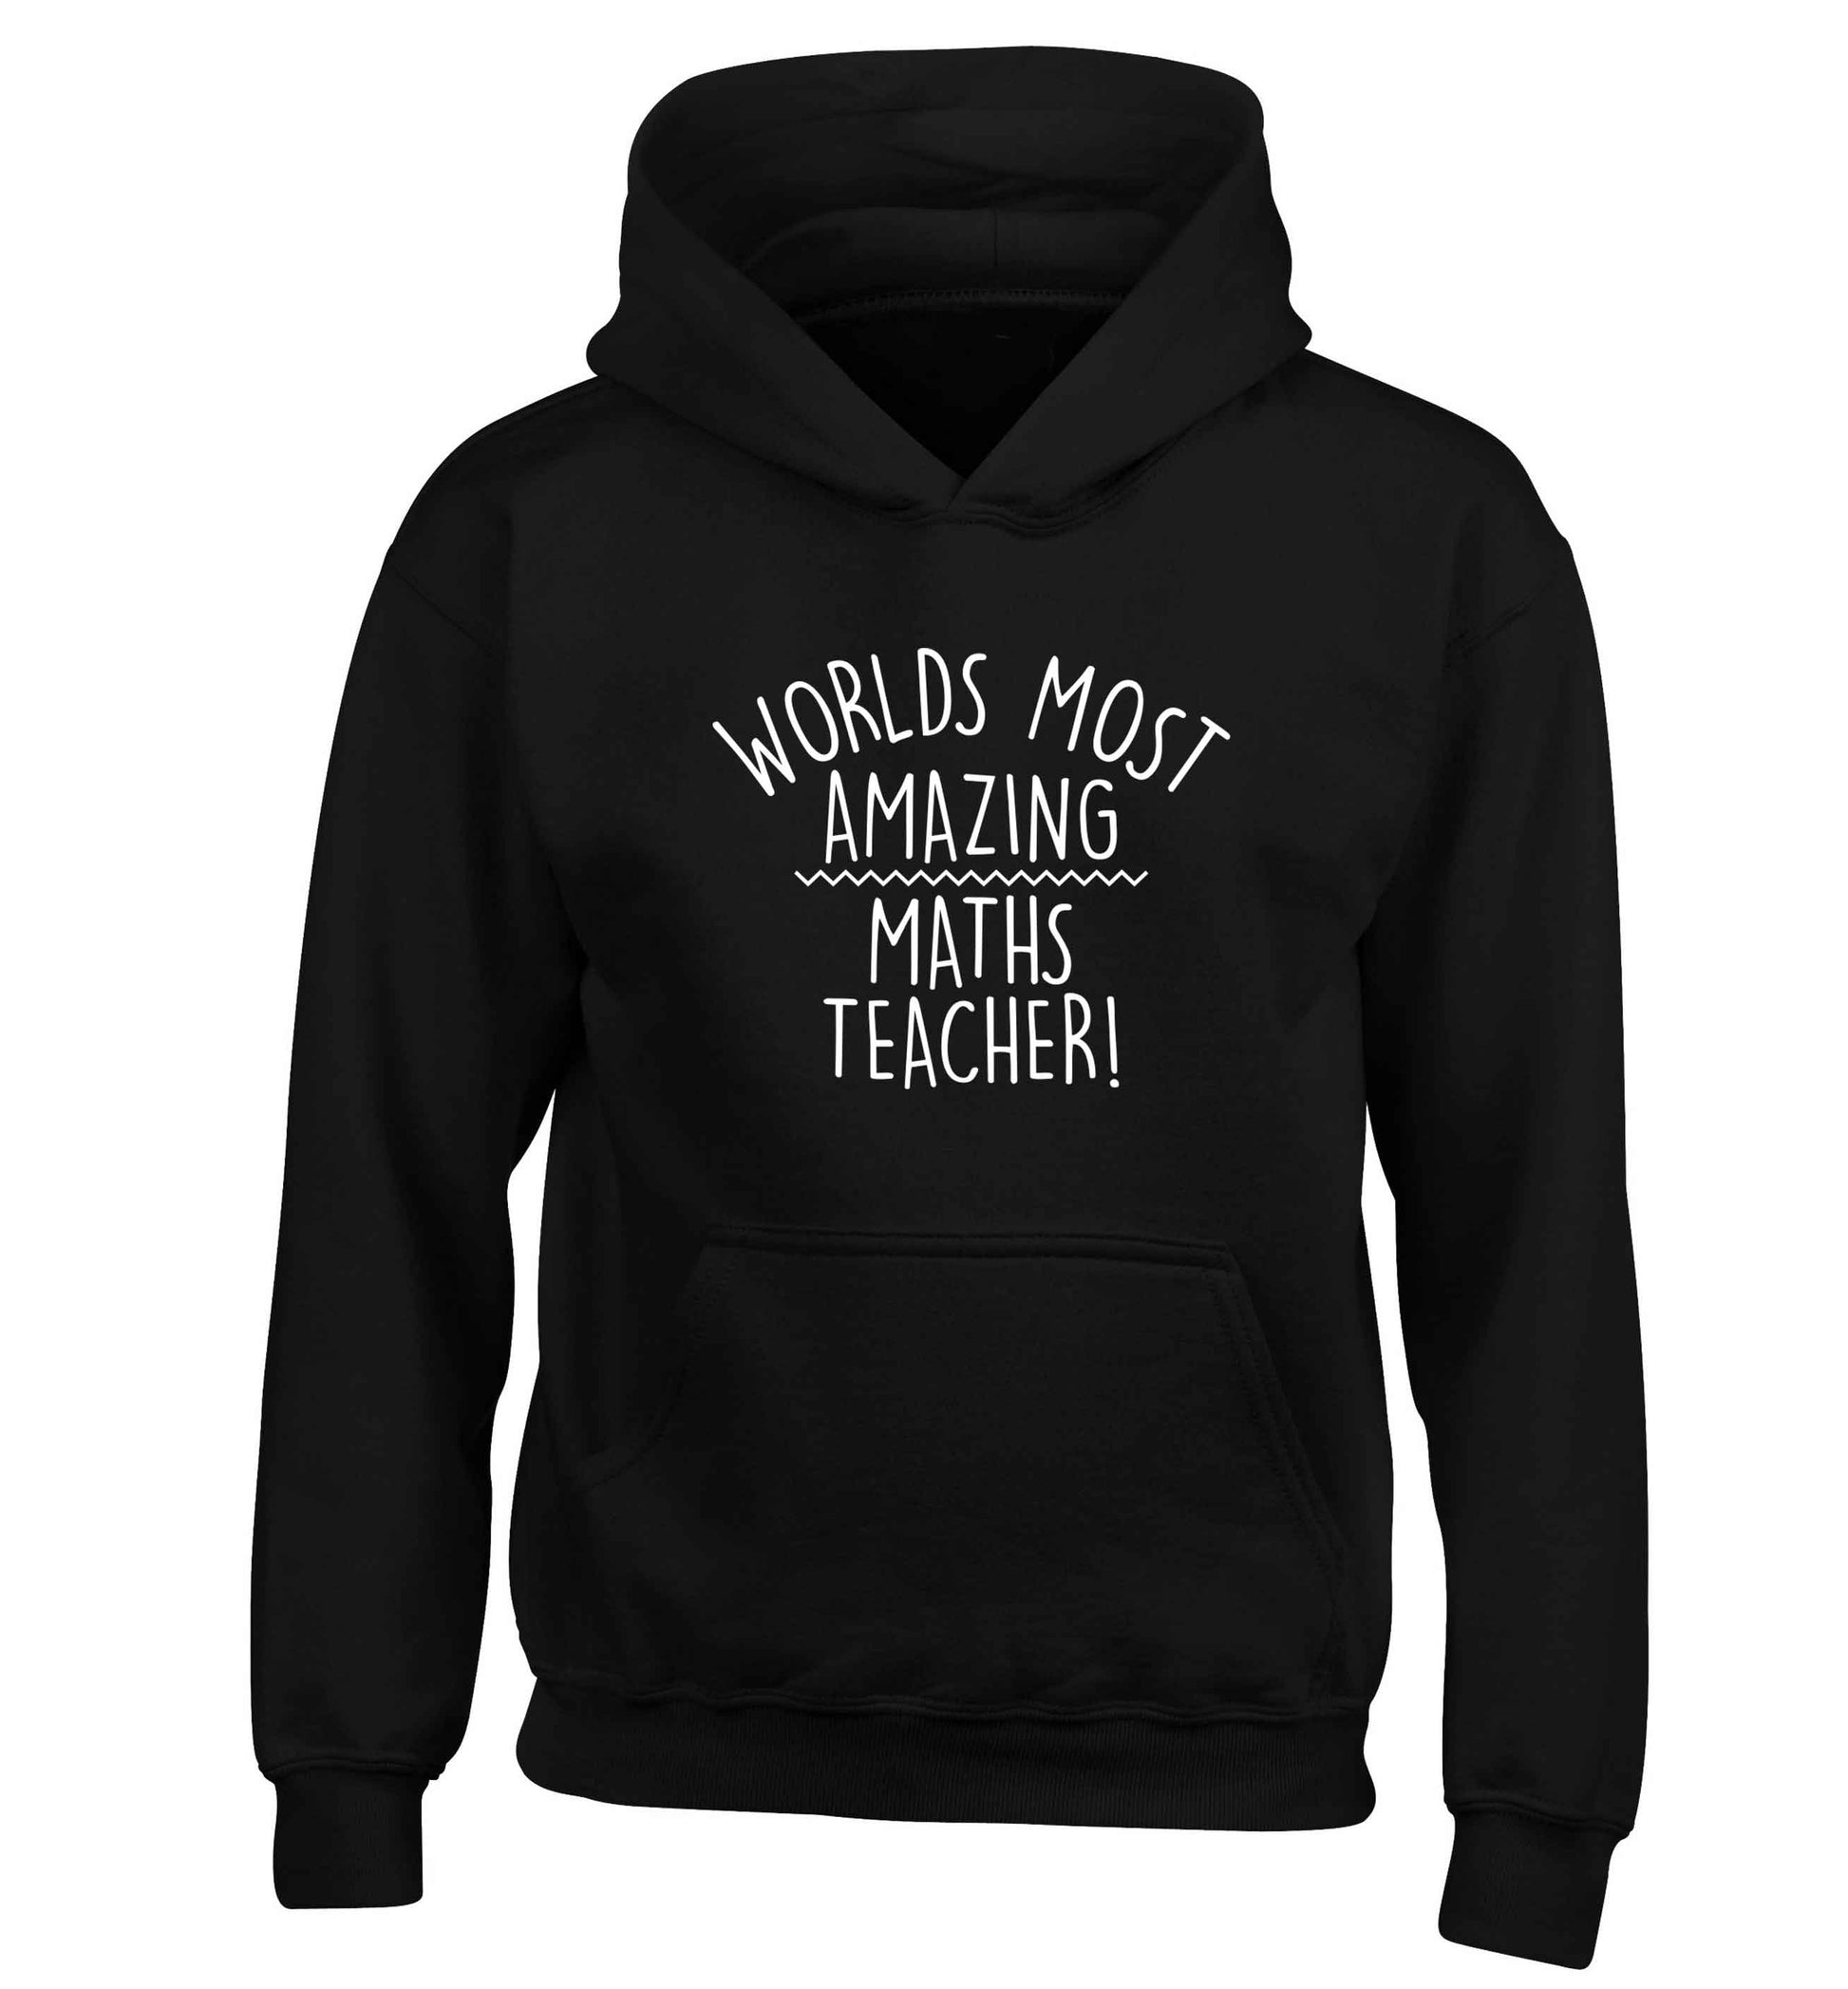 Worlds most amazing maths teacher children's black hoodie 12-13 Years